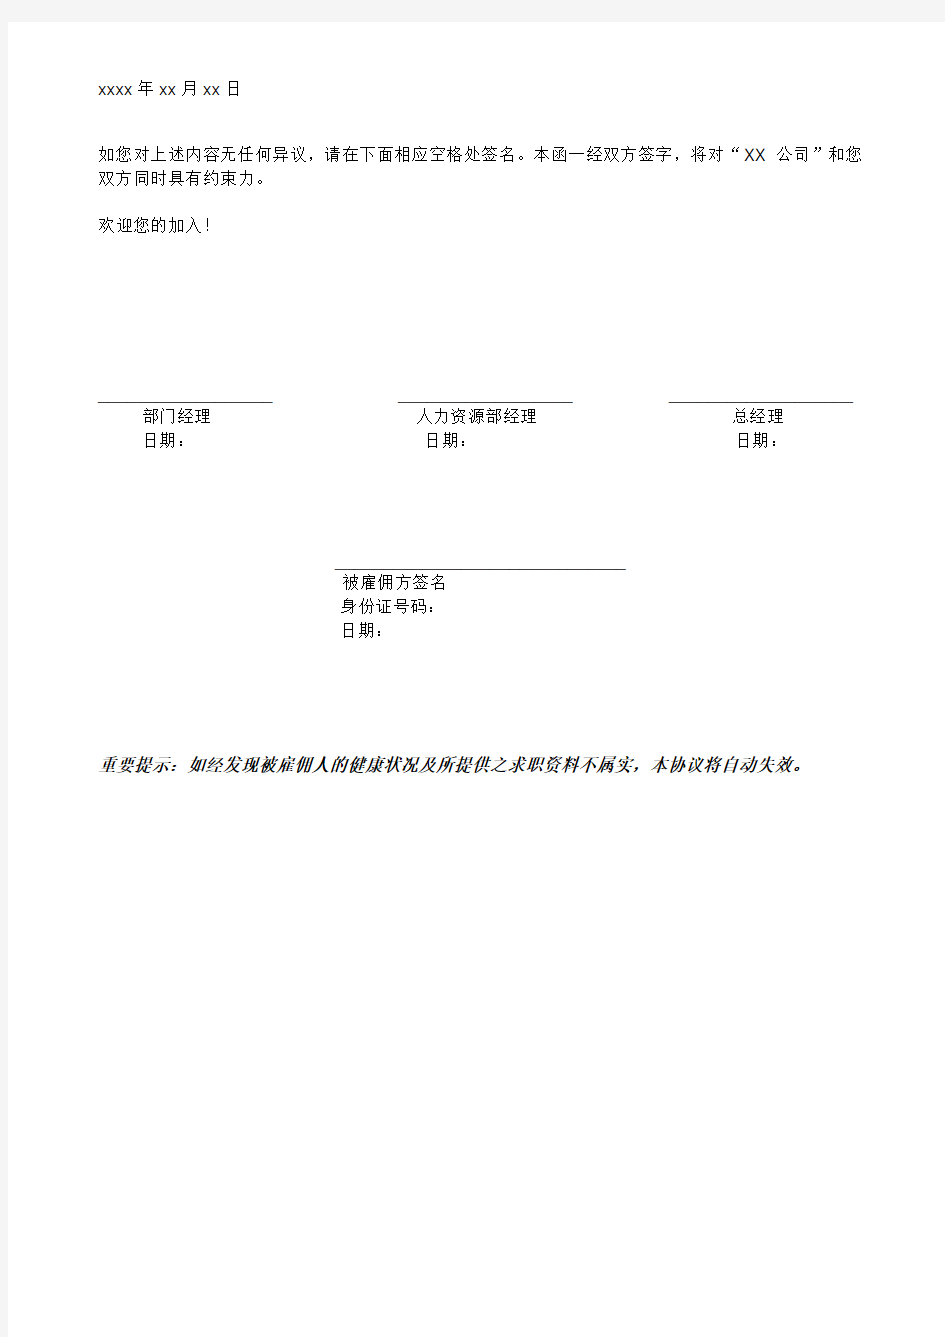 中文聘书模板-offer letter